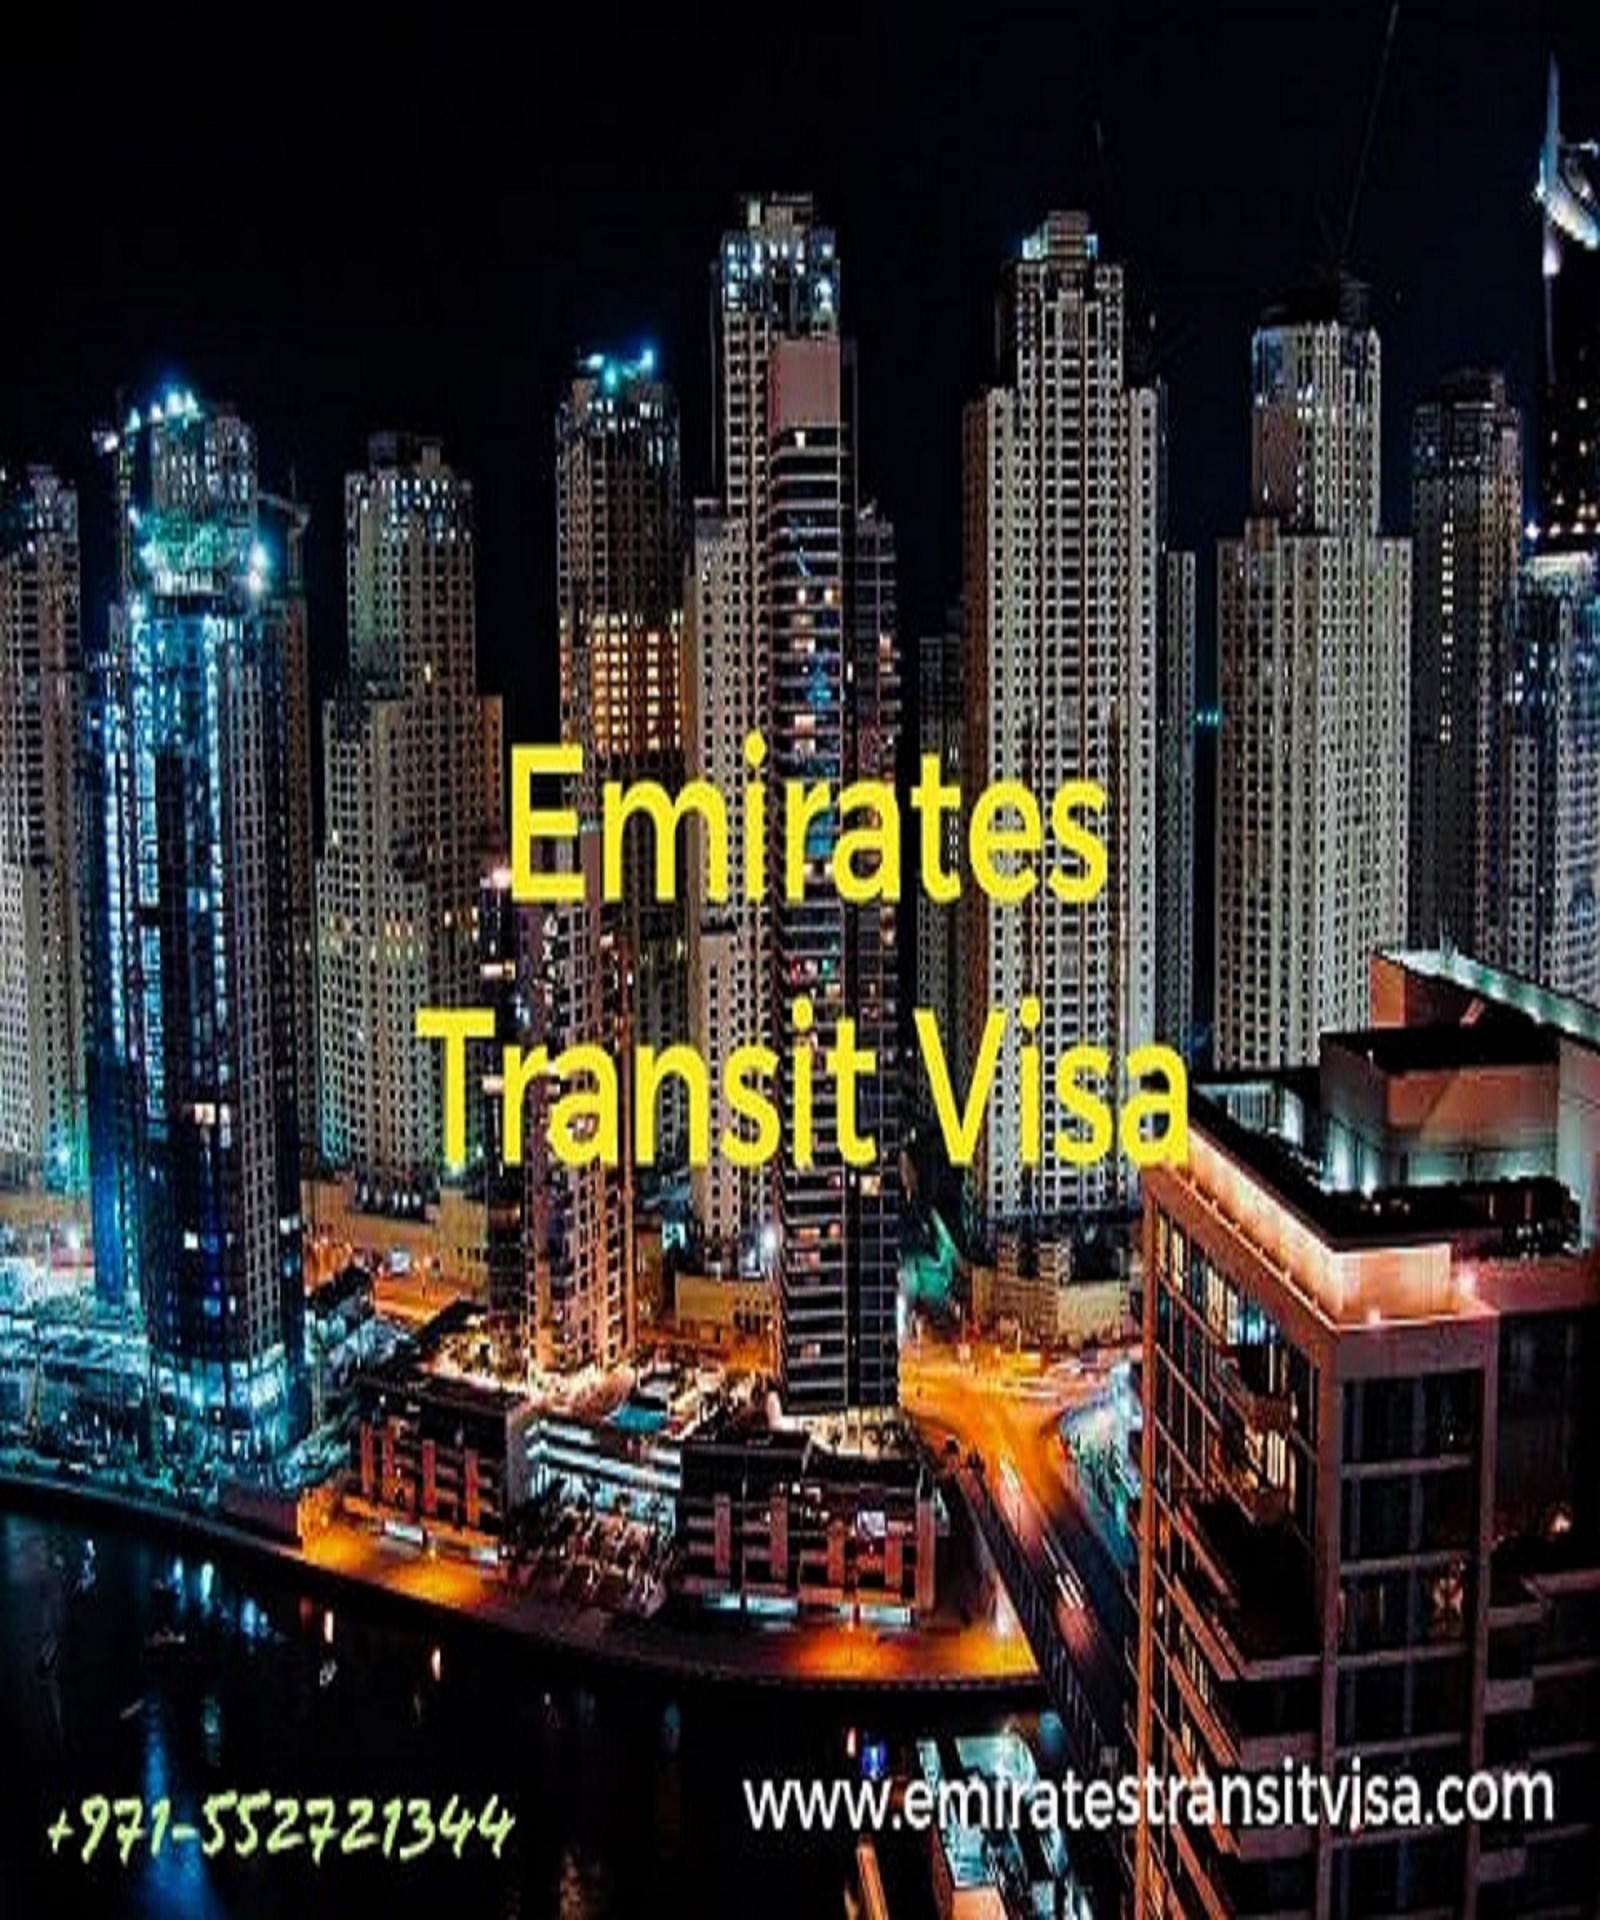 Emirates transit visa 